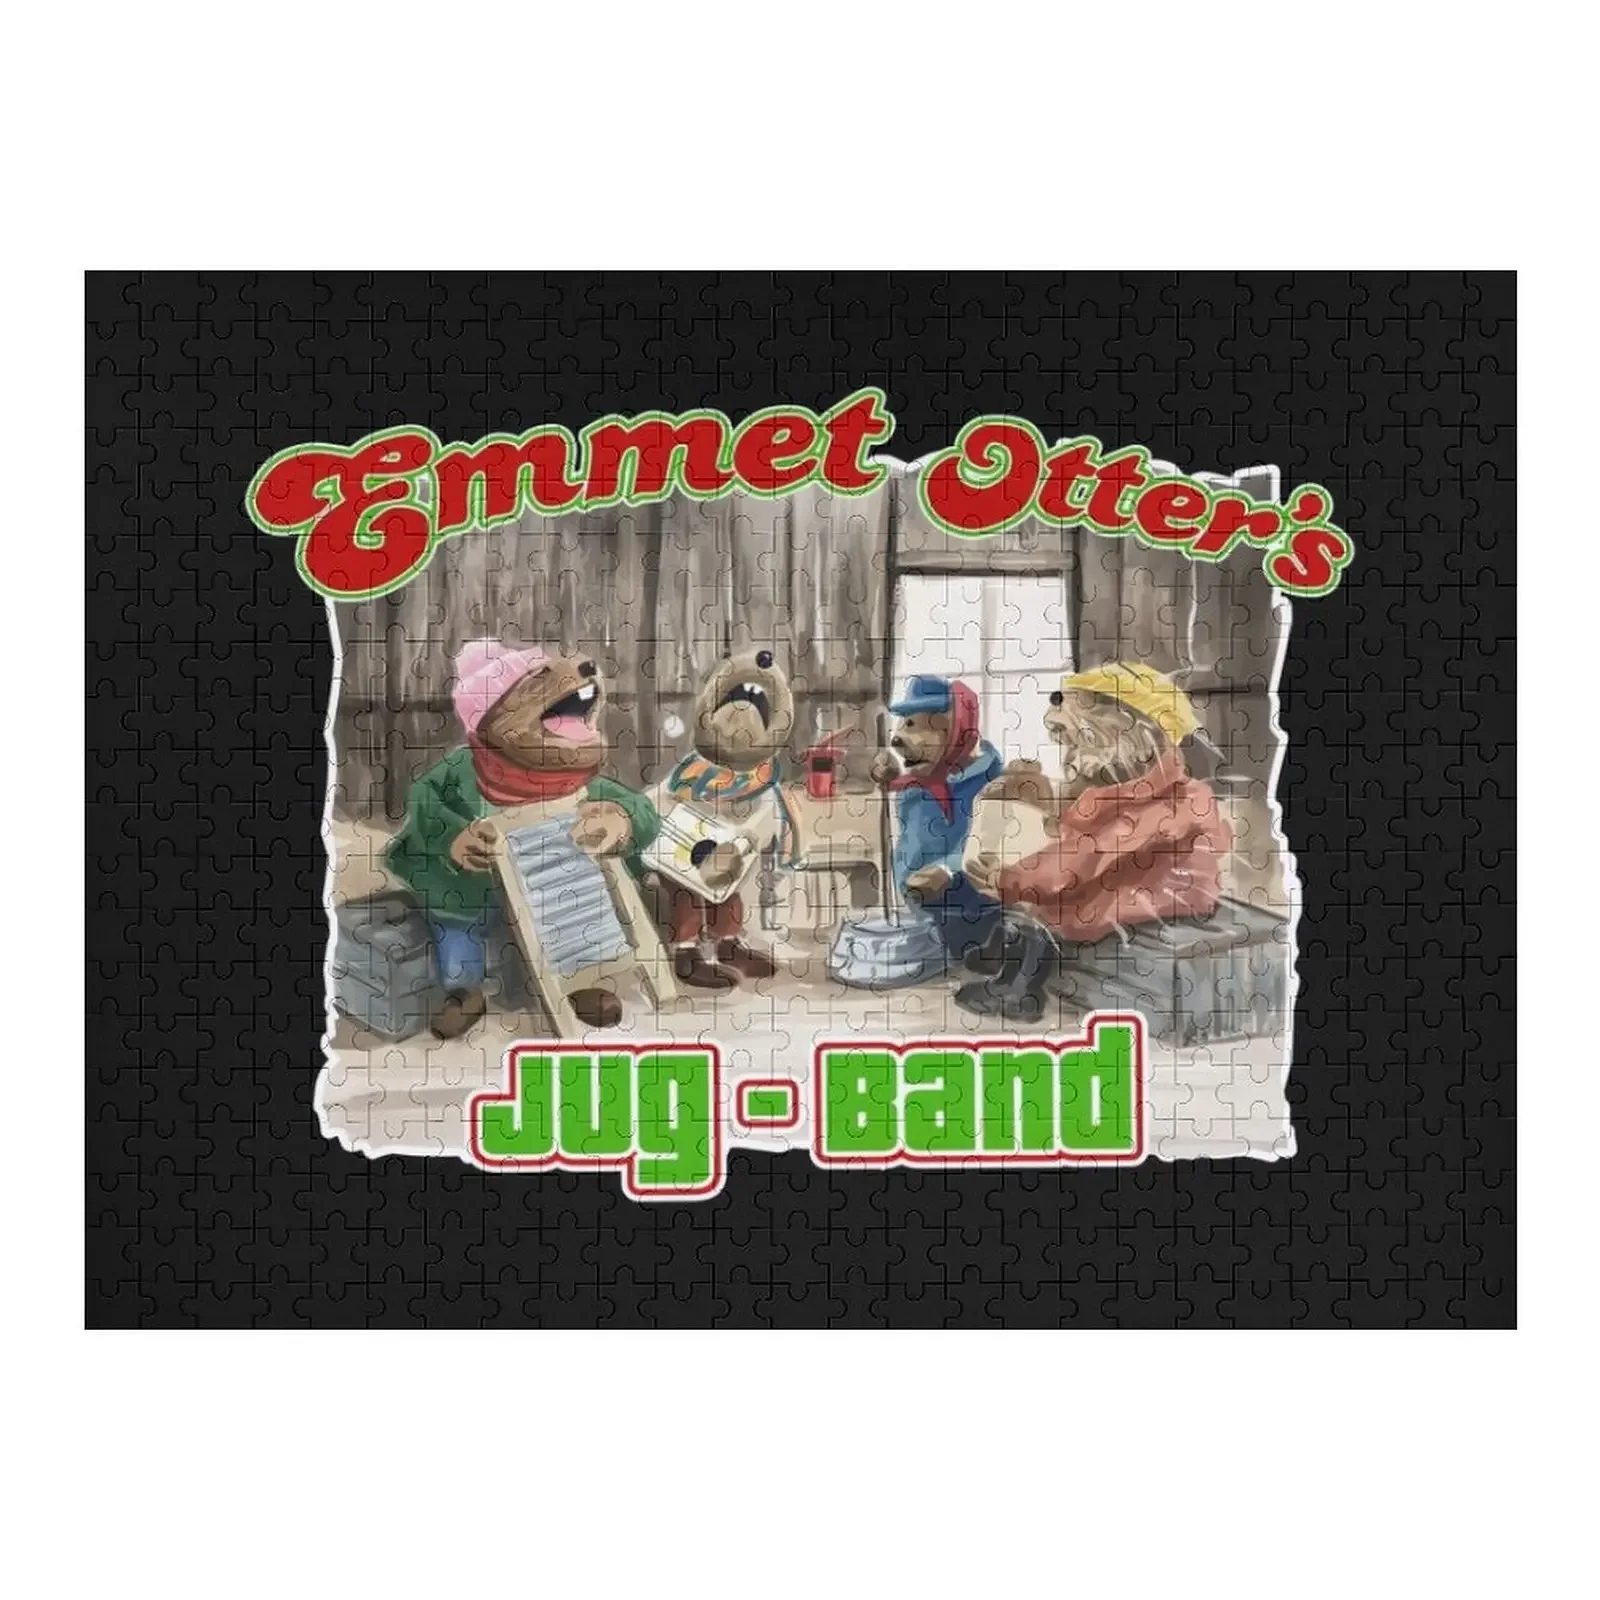 

Emmet-otter, retro, vintage, emmet otters jug band christmas, jug band, band Jigsaw Puzzle Baby Toy Photo Puzzle